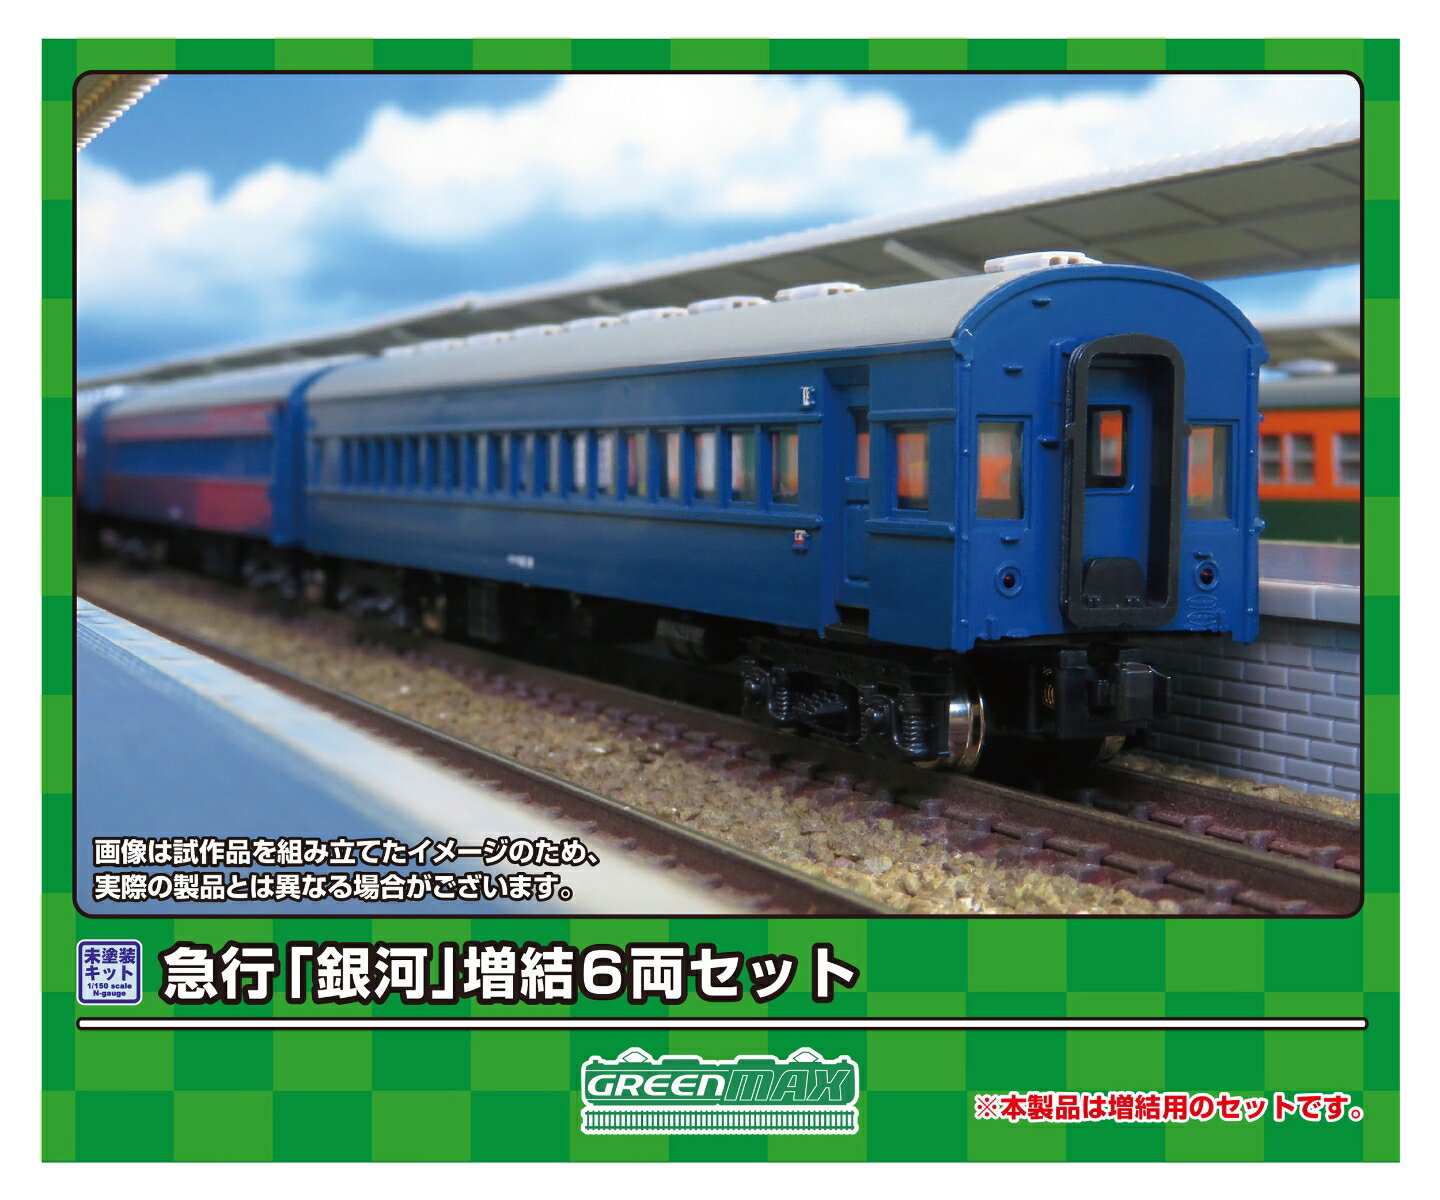 【実車について】	
急行「銀河」は、東海道本線の東京?大阪間で運行された夜行列車です。
1949（昭和24）年に東京?神戸間で運行された15・16列車に，「銀河」の愛称を付けて運転を開始したのが始まりで、1956（昭和31）年には三等寝台車を連結し、1976（昭和51）年に20系客車に置き換えられるまでは10系客車と43系客車が使用されました。
10系客車と43系客車が使用された時代では全区間、EF58形による牽引で運行されました。

【商品セット構成】	
・ボディ（グレー成形）
・屋根（グレー成形）
・ベンチレーター
・床下機器（黒成形）
・幌
・塩ビ板
・ウエイト
・ステッカー
・組立説明書

【商品の特徴】	
■急行「銀河」イメージしたアソートセット
■行先表示板、愛称板などを収録した新規製作の専用ステッカーが付属
■ボディ・屋根グレー成形、床下機器は黒成形
■急行「銀河」用の行先表示、愛称札、号車札などを収録したステッカー(新規製作)が基本セットと増結セットに付属
■別売りの＜625＞基本6両編成セットと発売済みの単品キットを組み合わせると、実車と同じ編成を再現可能
※本製品に台車、車両マークは付属しません。
※本製品は未塗装キットのため、組み立て、塗装が必要です。
※商品の仕様は一部実車と異なる場合があります。【対象年齢】：15歳以上